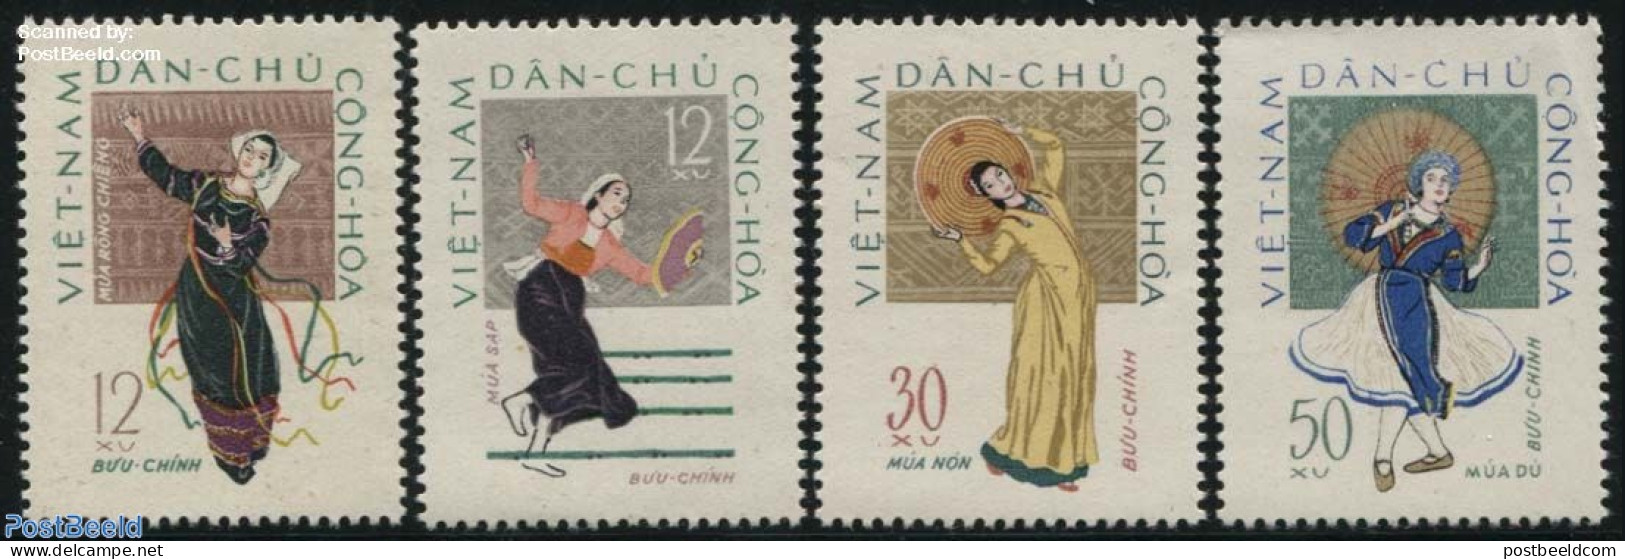 Vietnam 1962 Folk Dancing 4v, Mint NH, Performance Art - Dance & Ballet - Dance